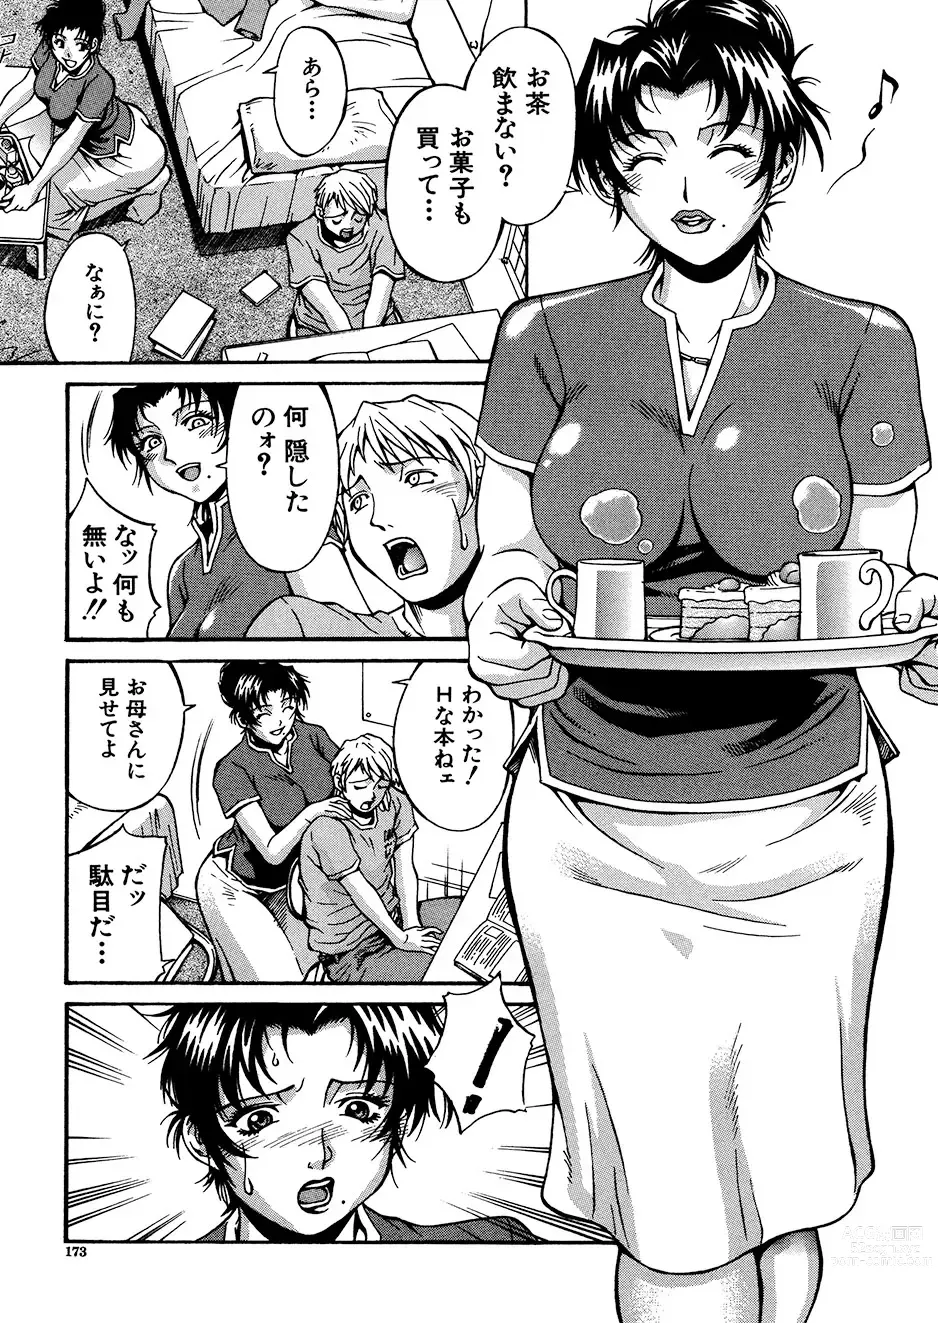 Page 172 of manga Mechiku